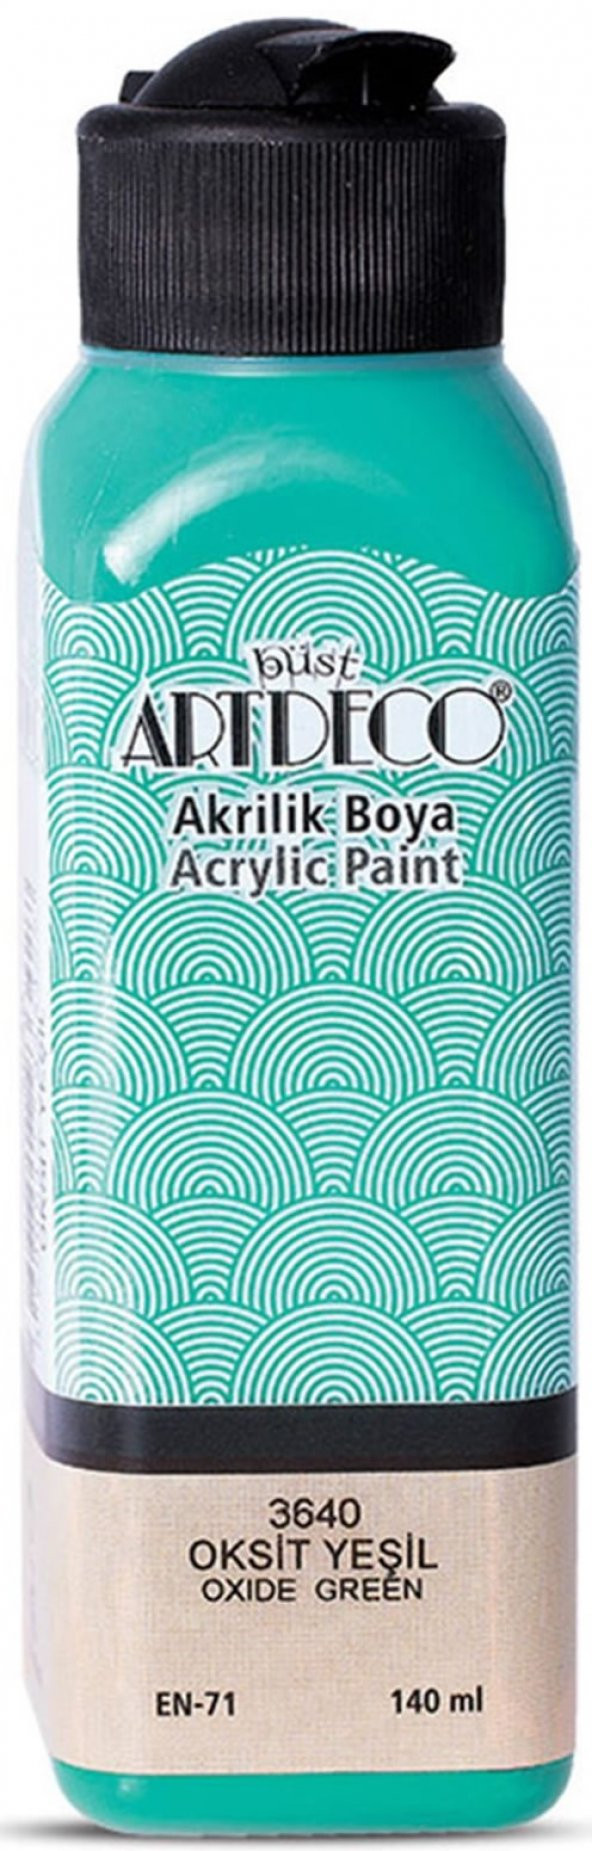 Artdeco 3640 140 ml Oksit Yeşili Akrilik Boya